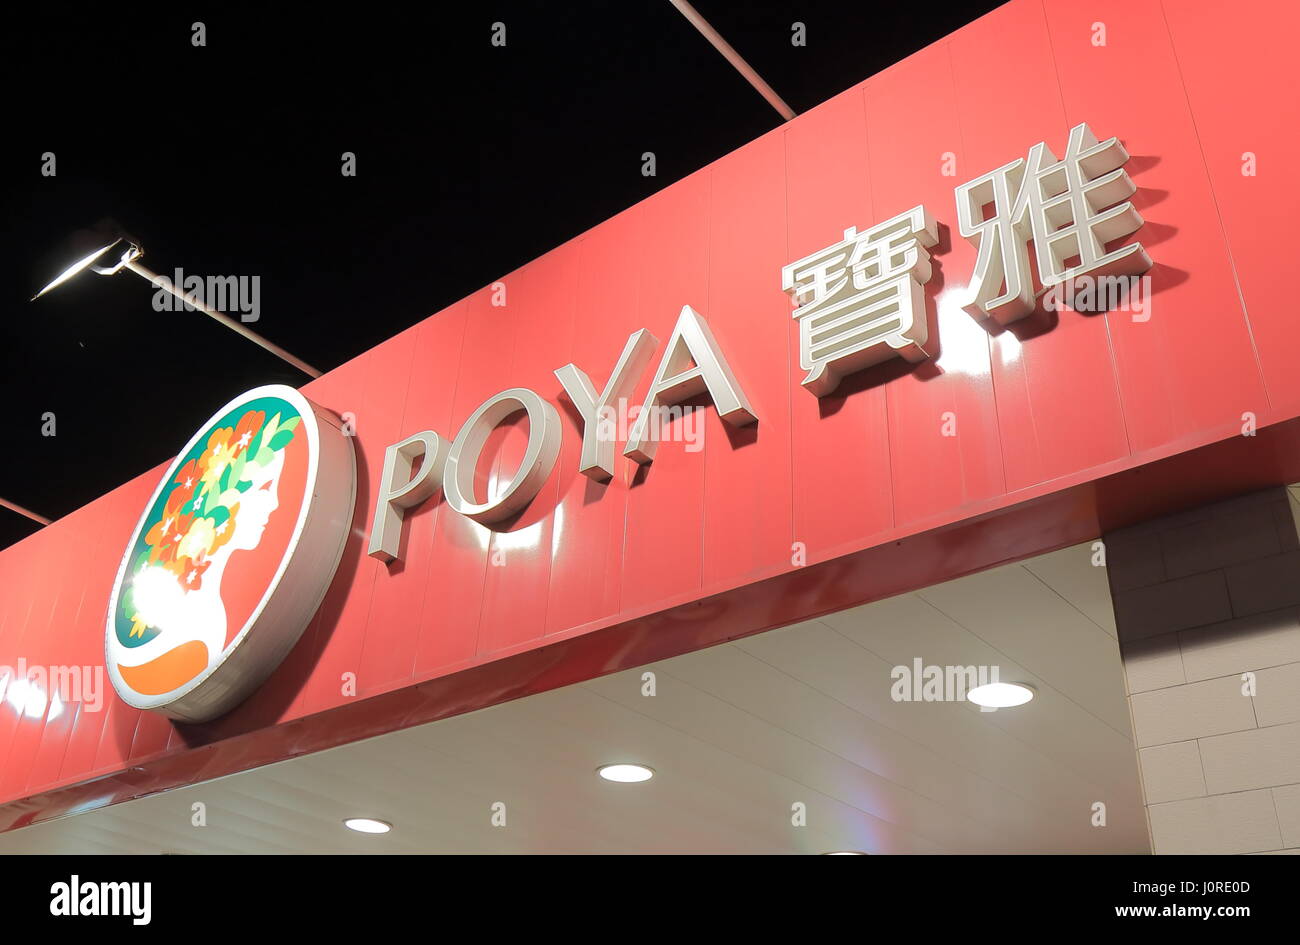 Poya. Poya est un magasin de spécialités taïwanaises offrant la beauté personnelle et de marchandises dans le monde entier. d'exploitation quotidienne Banque D'Images